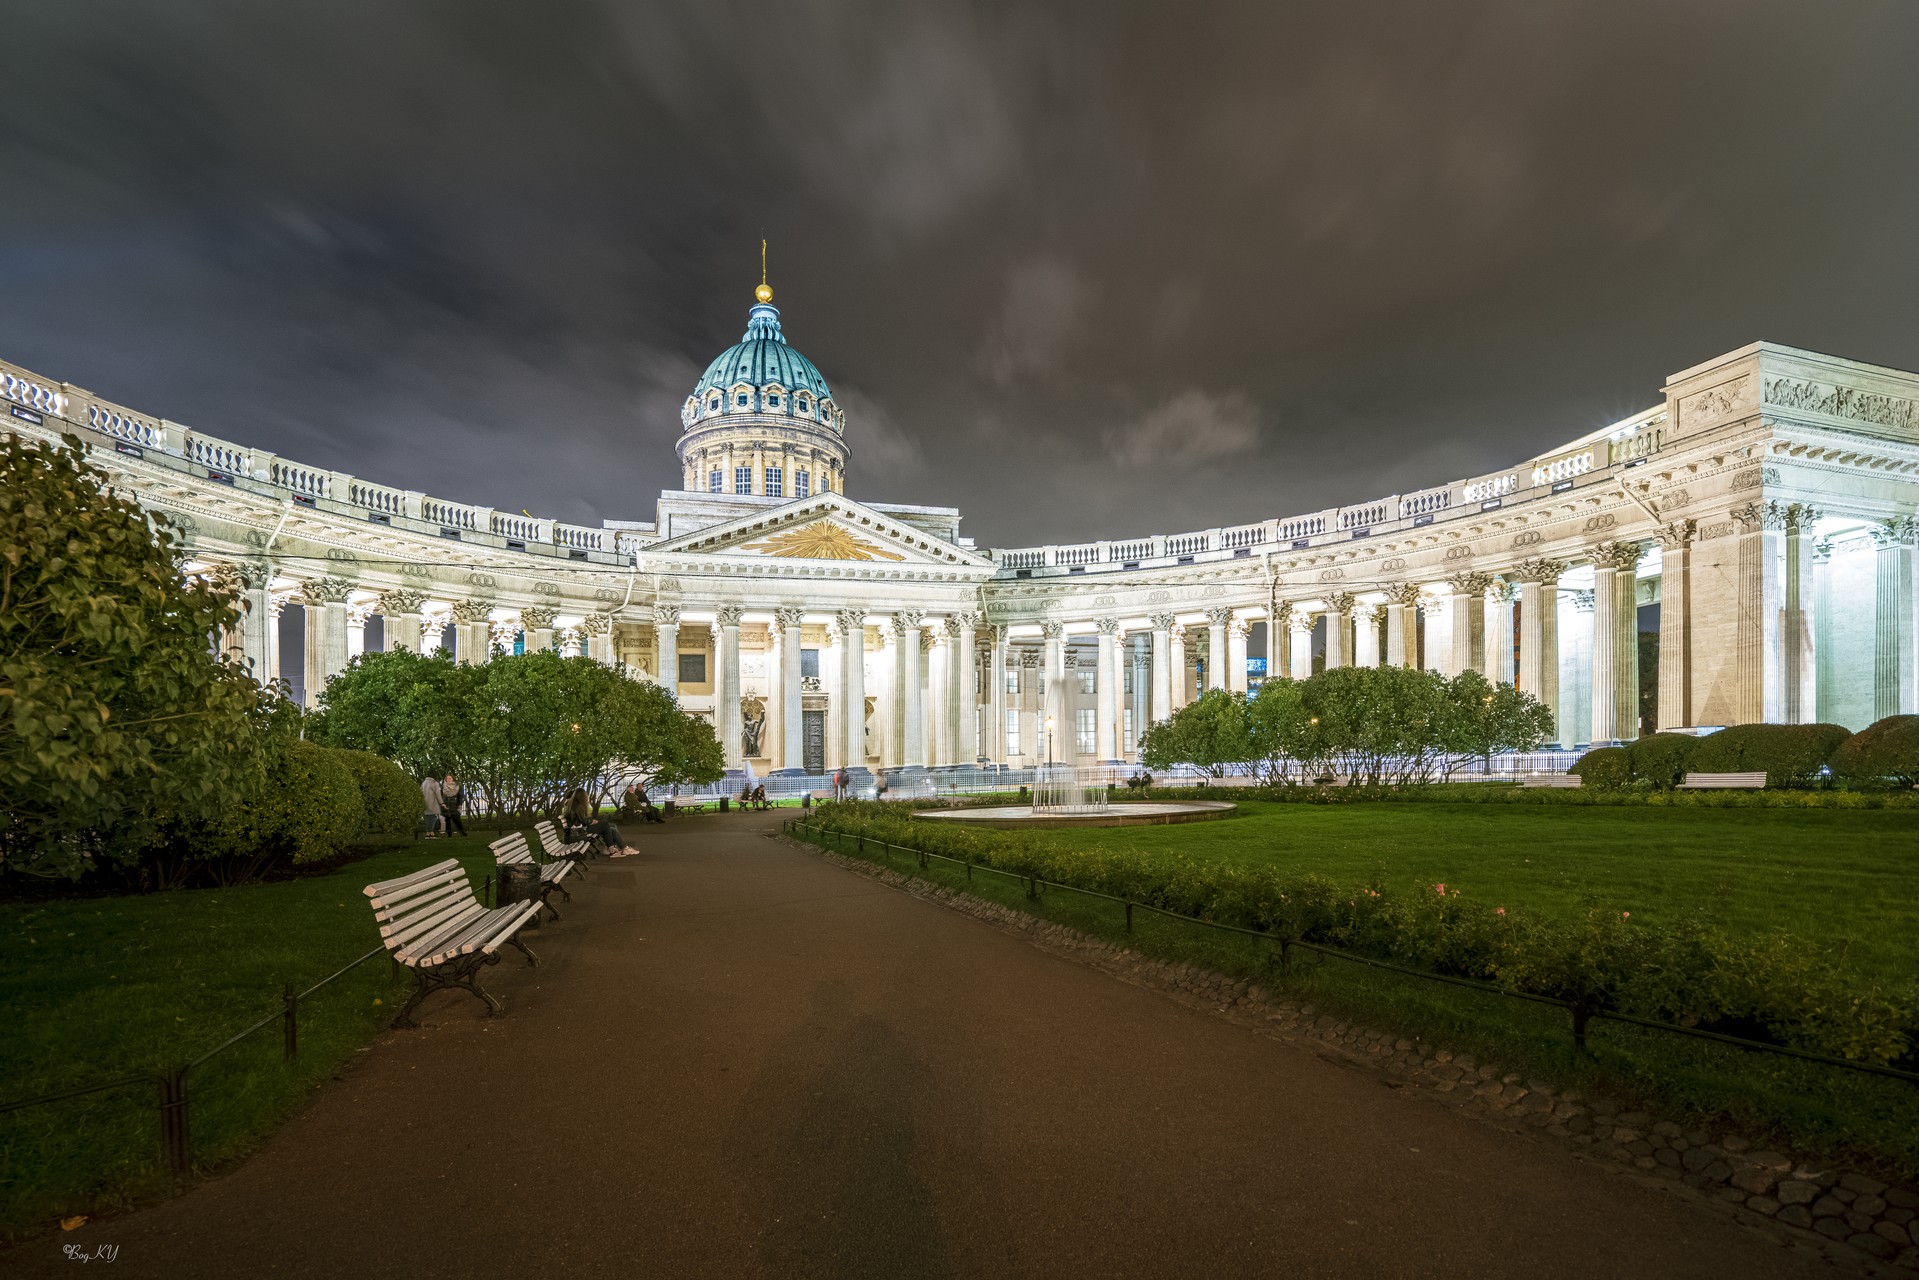 Сквер у Казанского собора